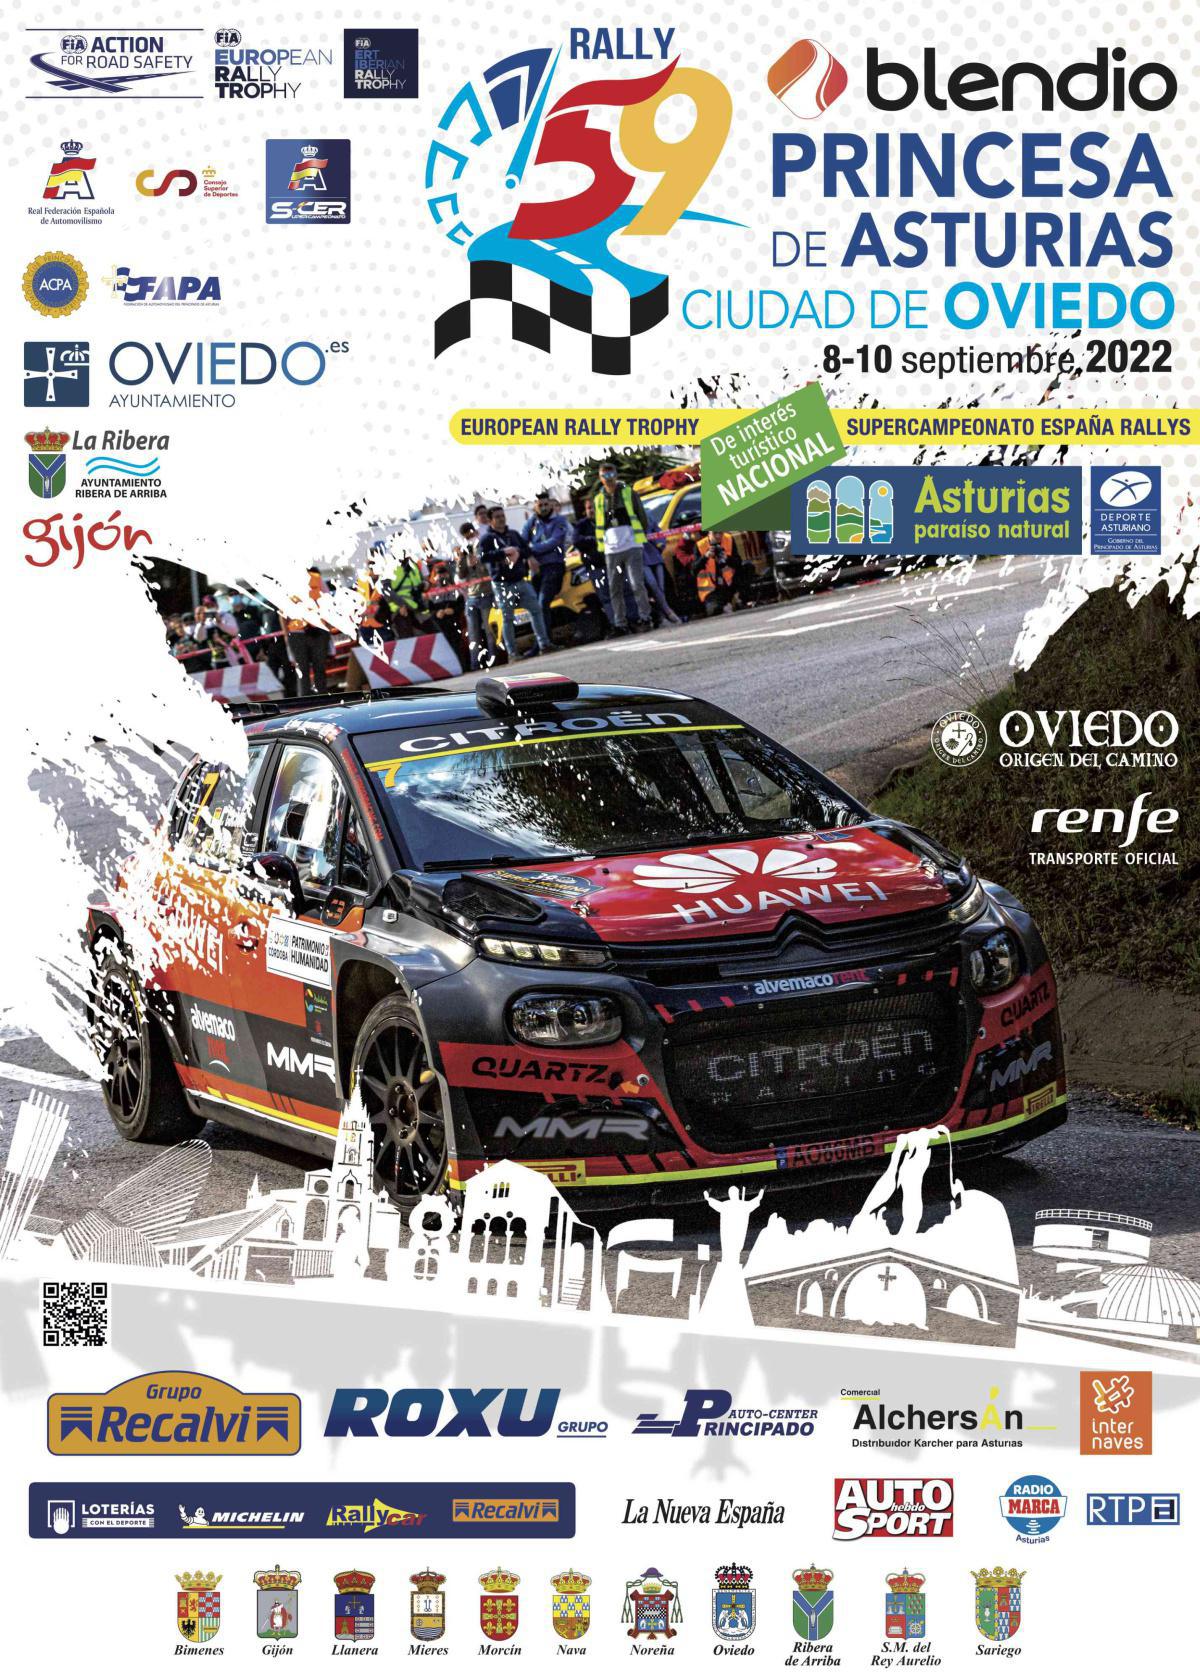 La 59 edición del rally Blendio Princesa de Asturias Ciudad de Oviedo ya tiene cartel oficial